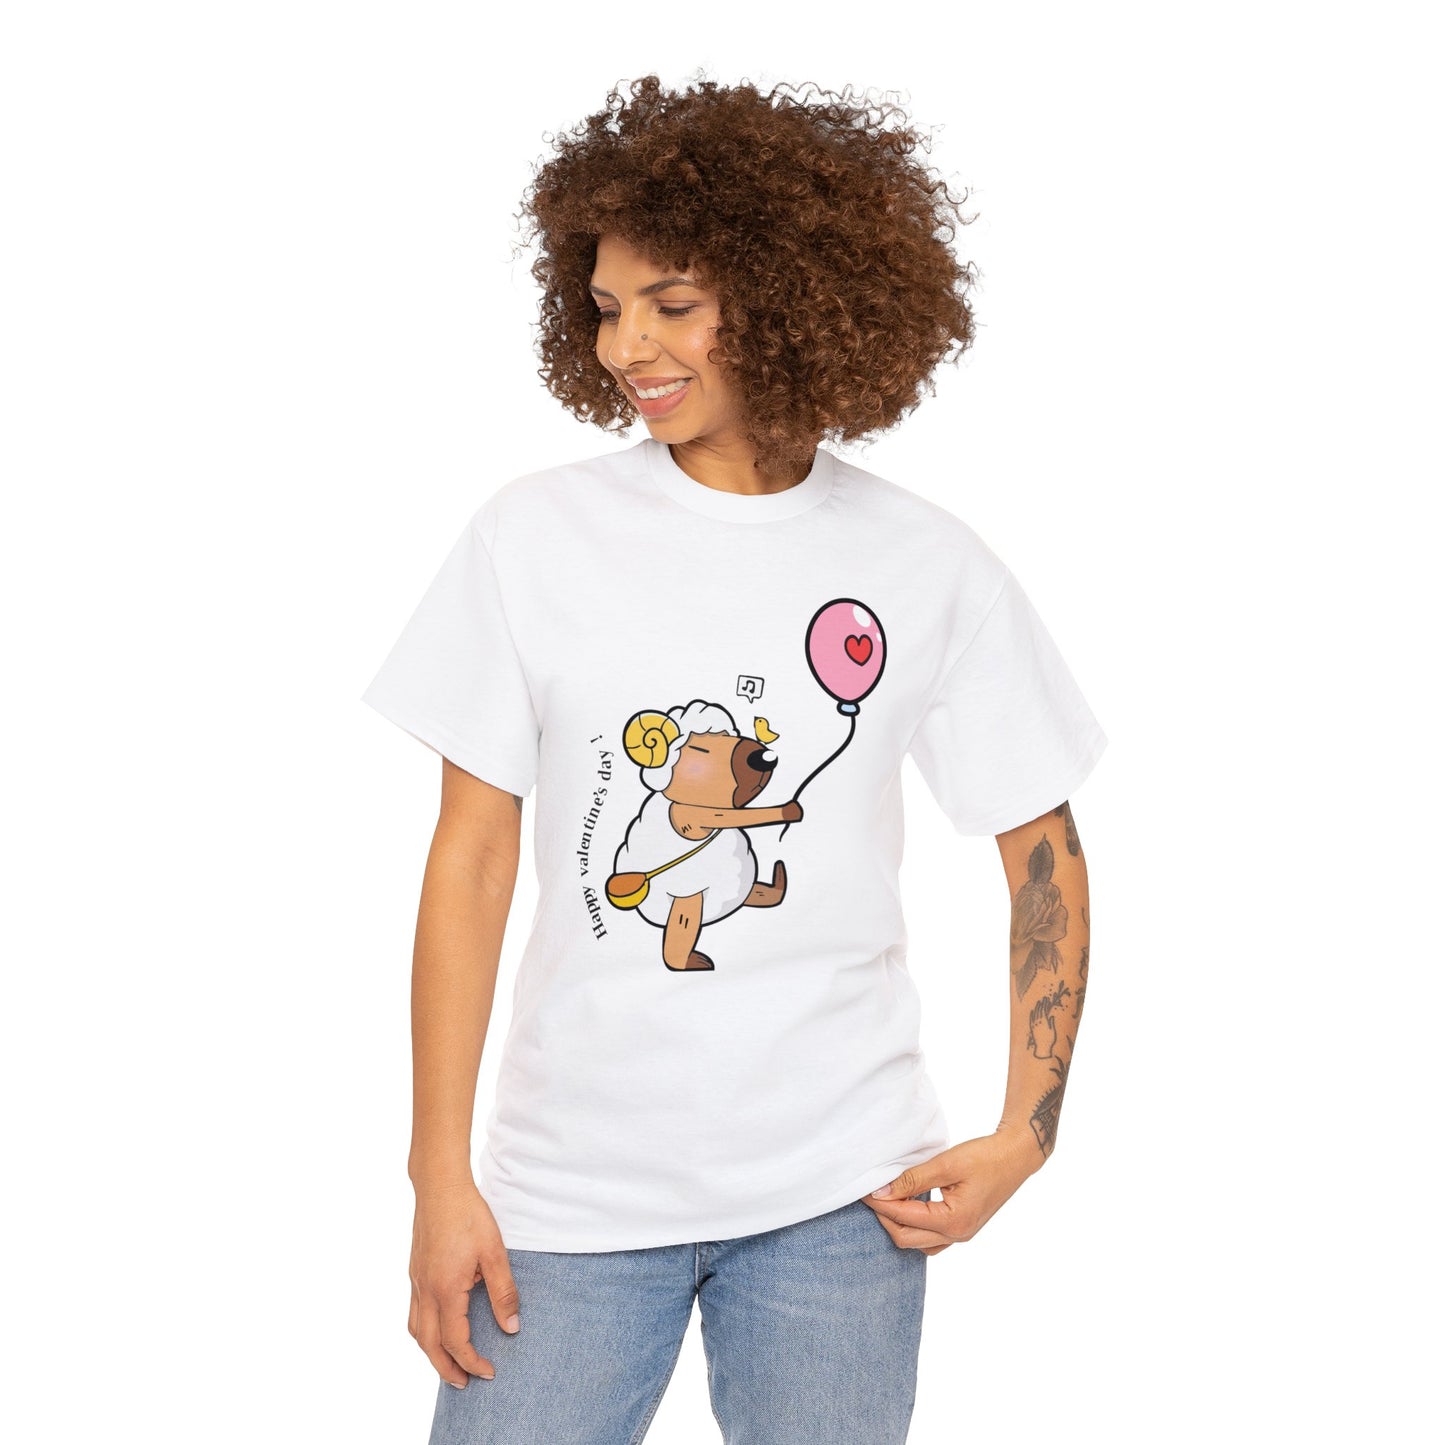 Aries Capybara T-Shirt for Women